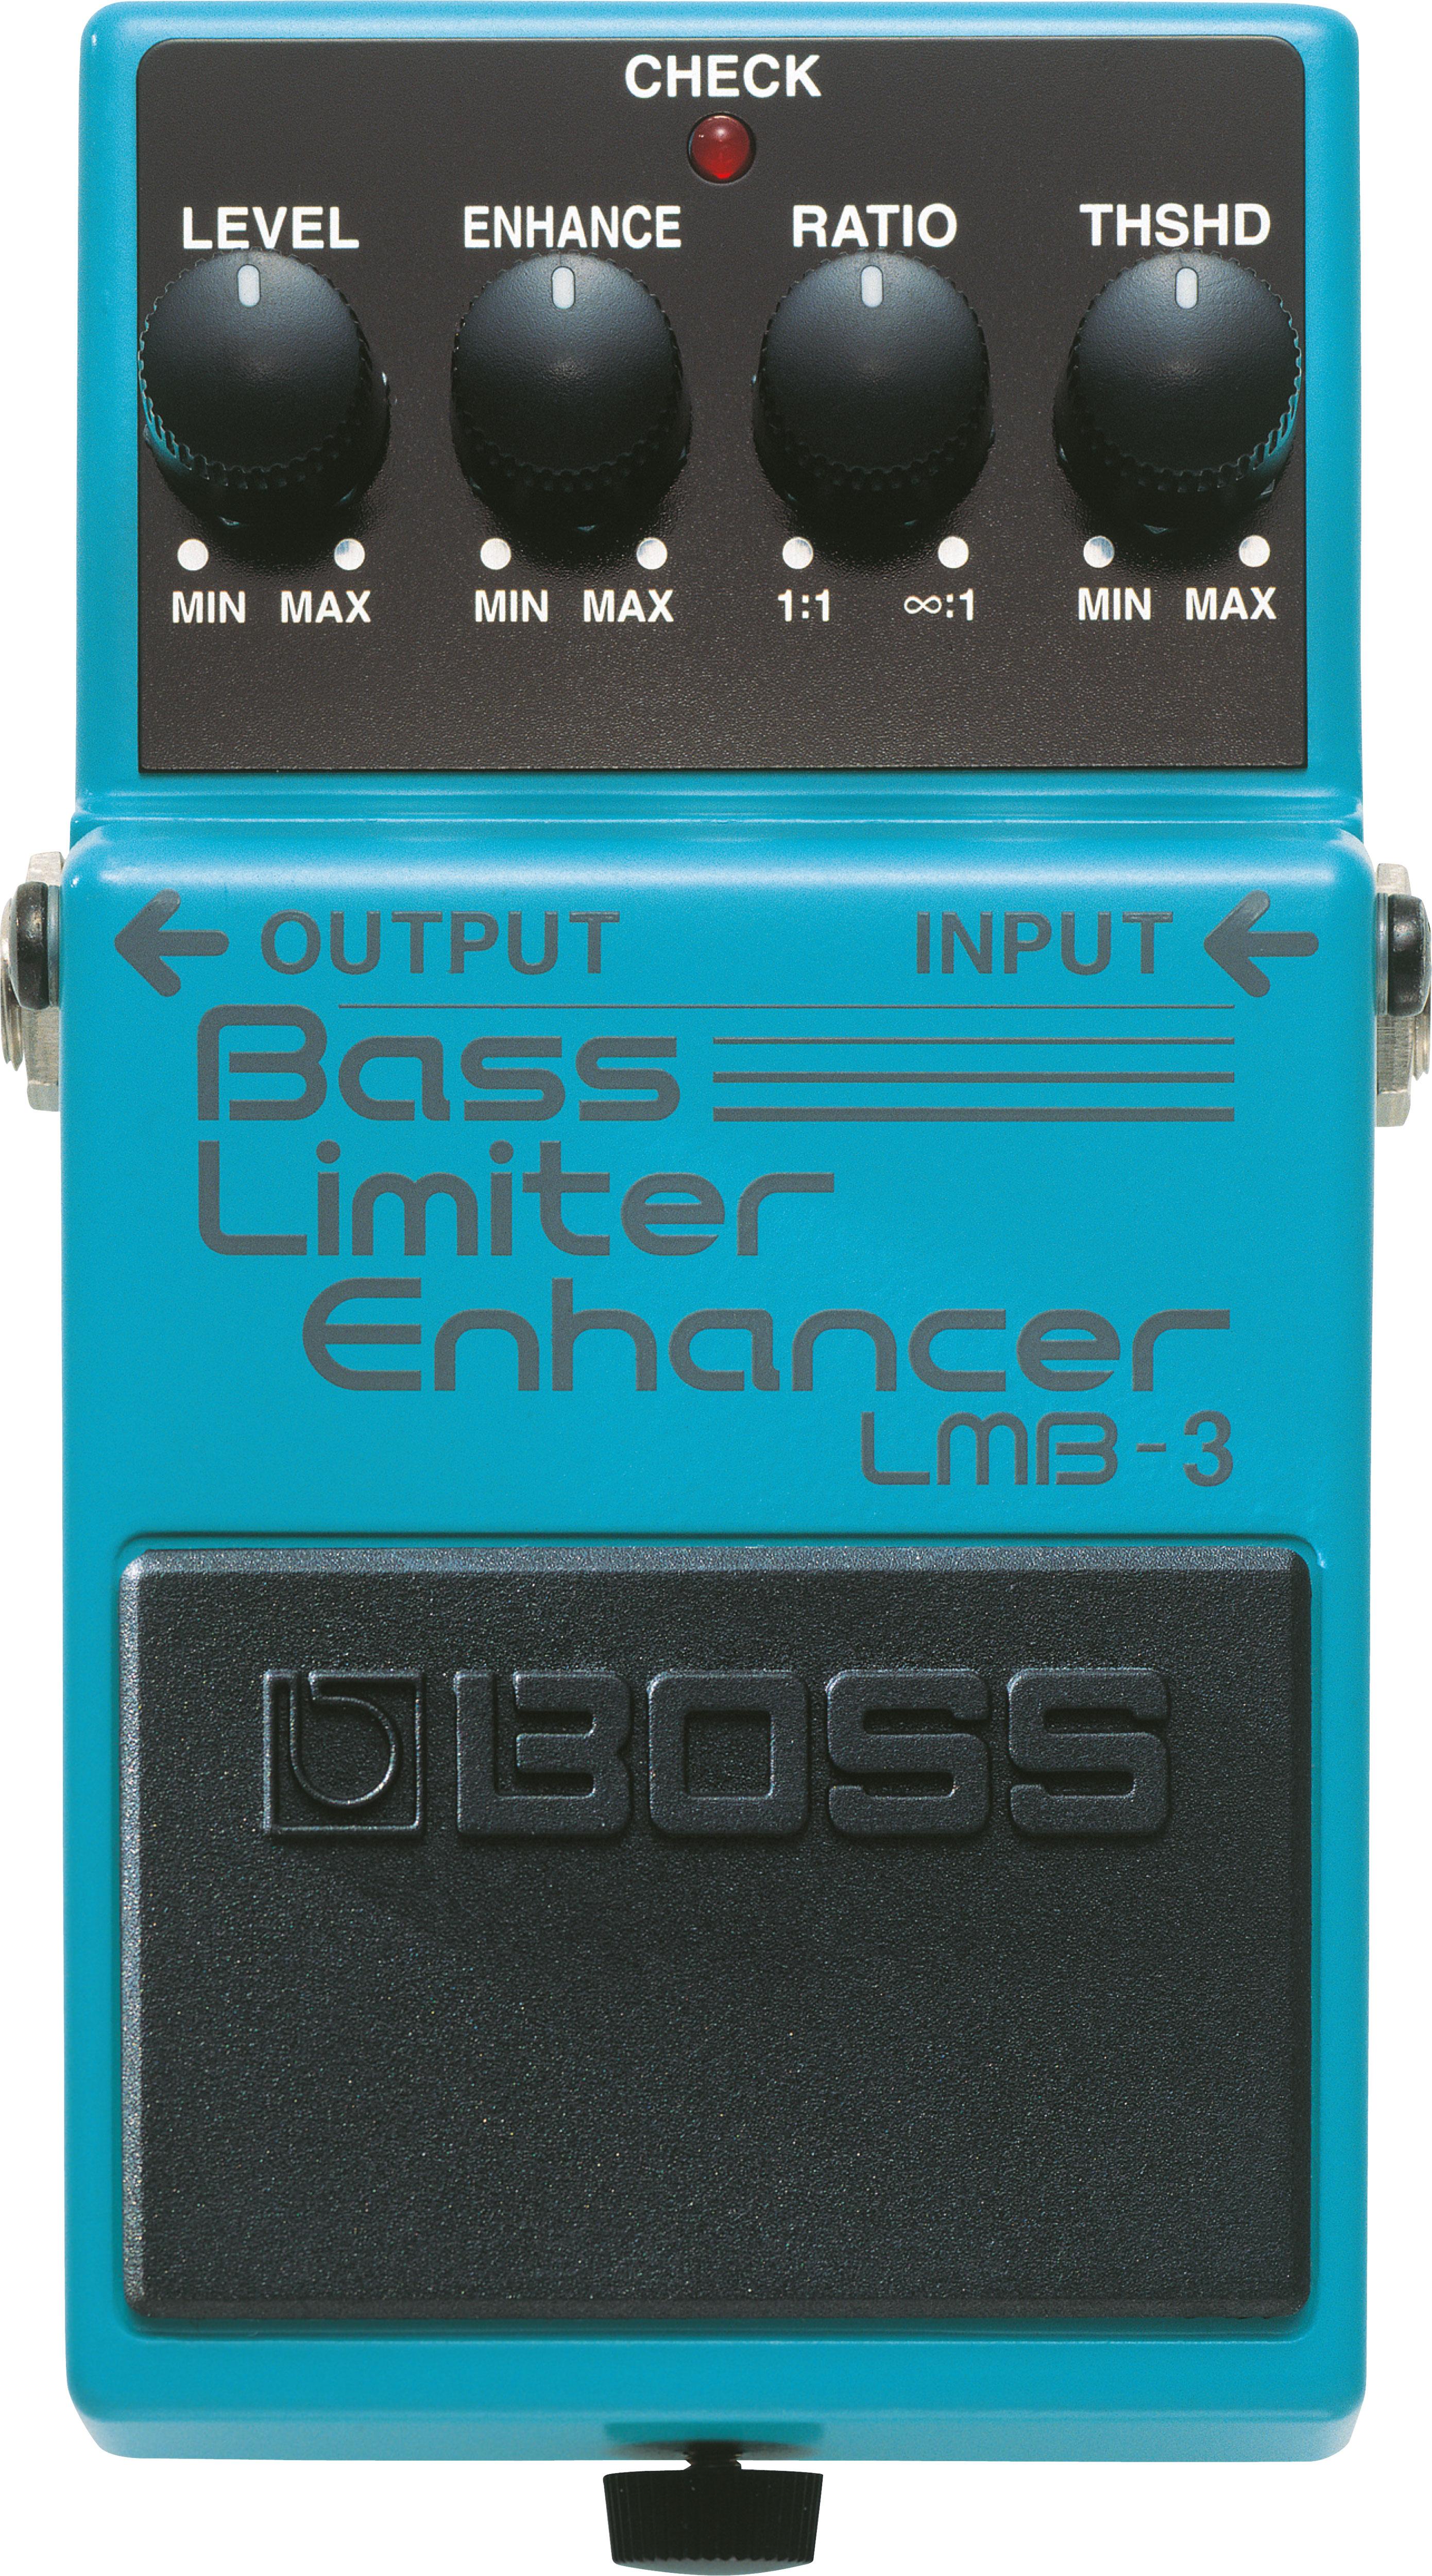 LMB-3 Bass Limiter Enhancer